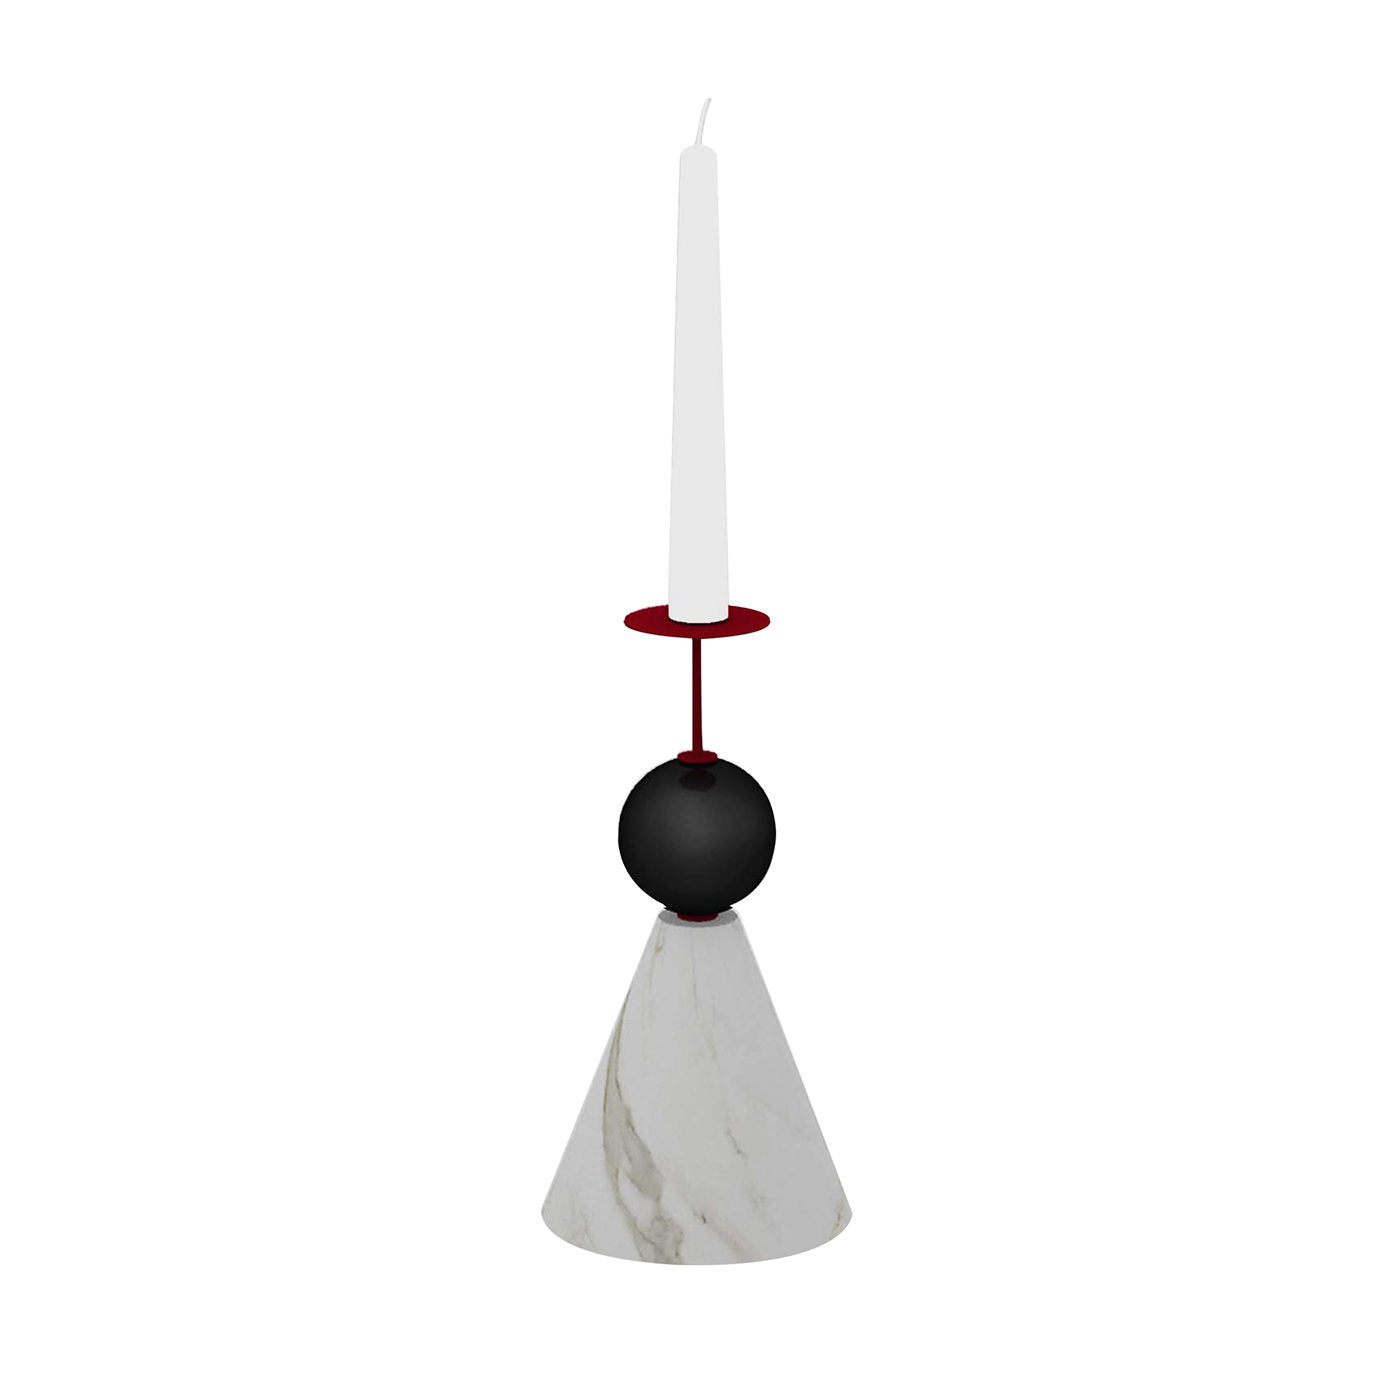 Bougeoir conique Raccontami Blanc Carrara, Noir et Rouge - Vue principale